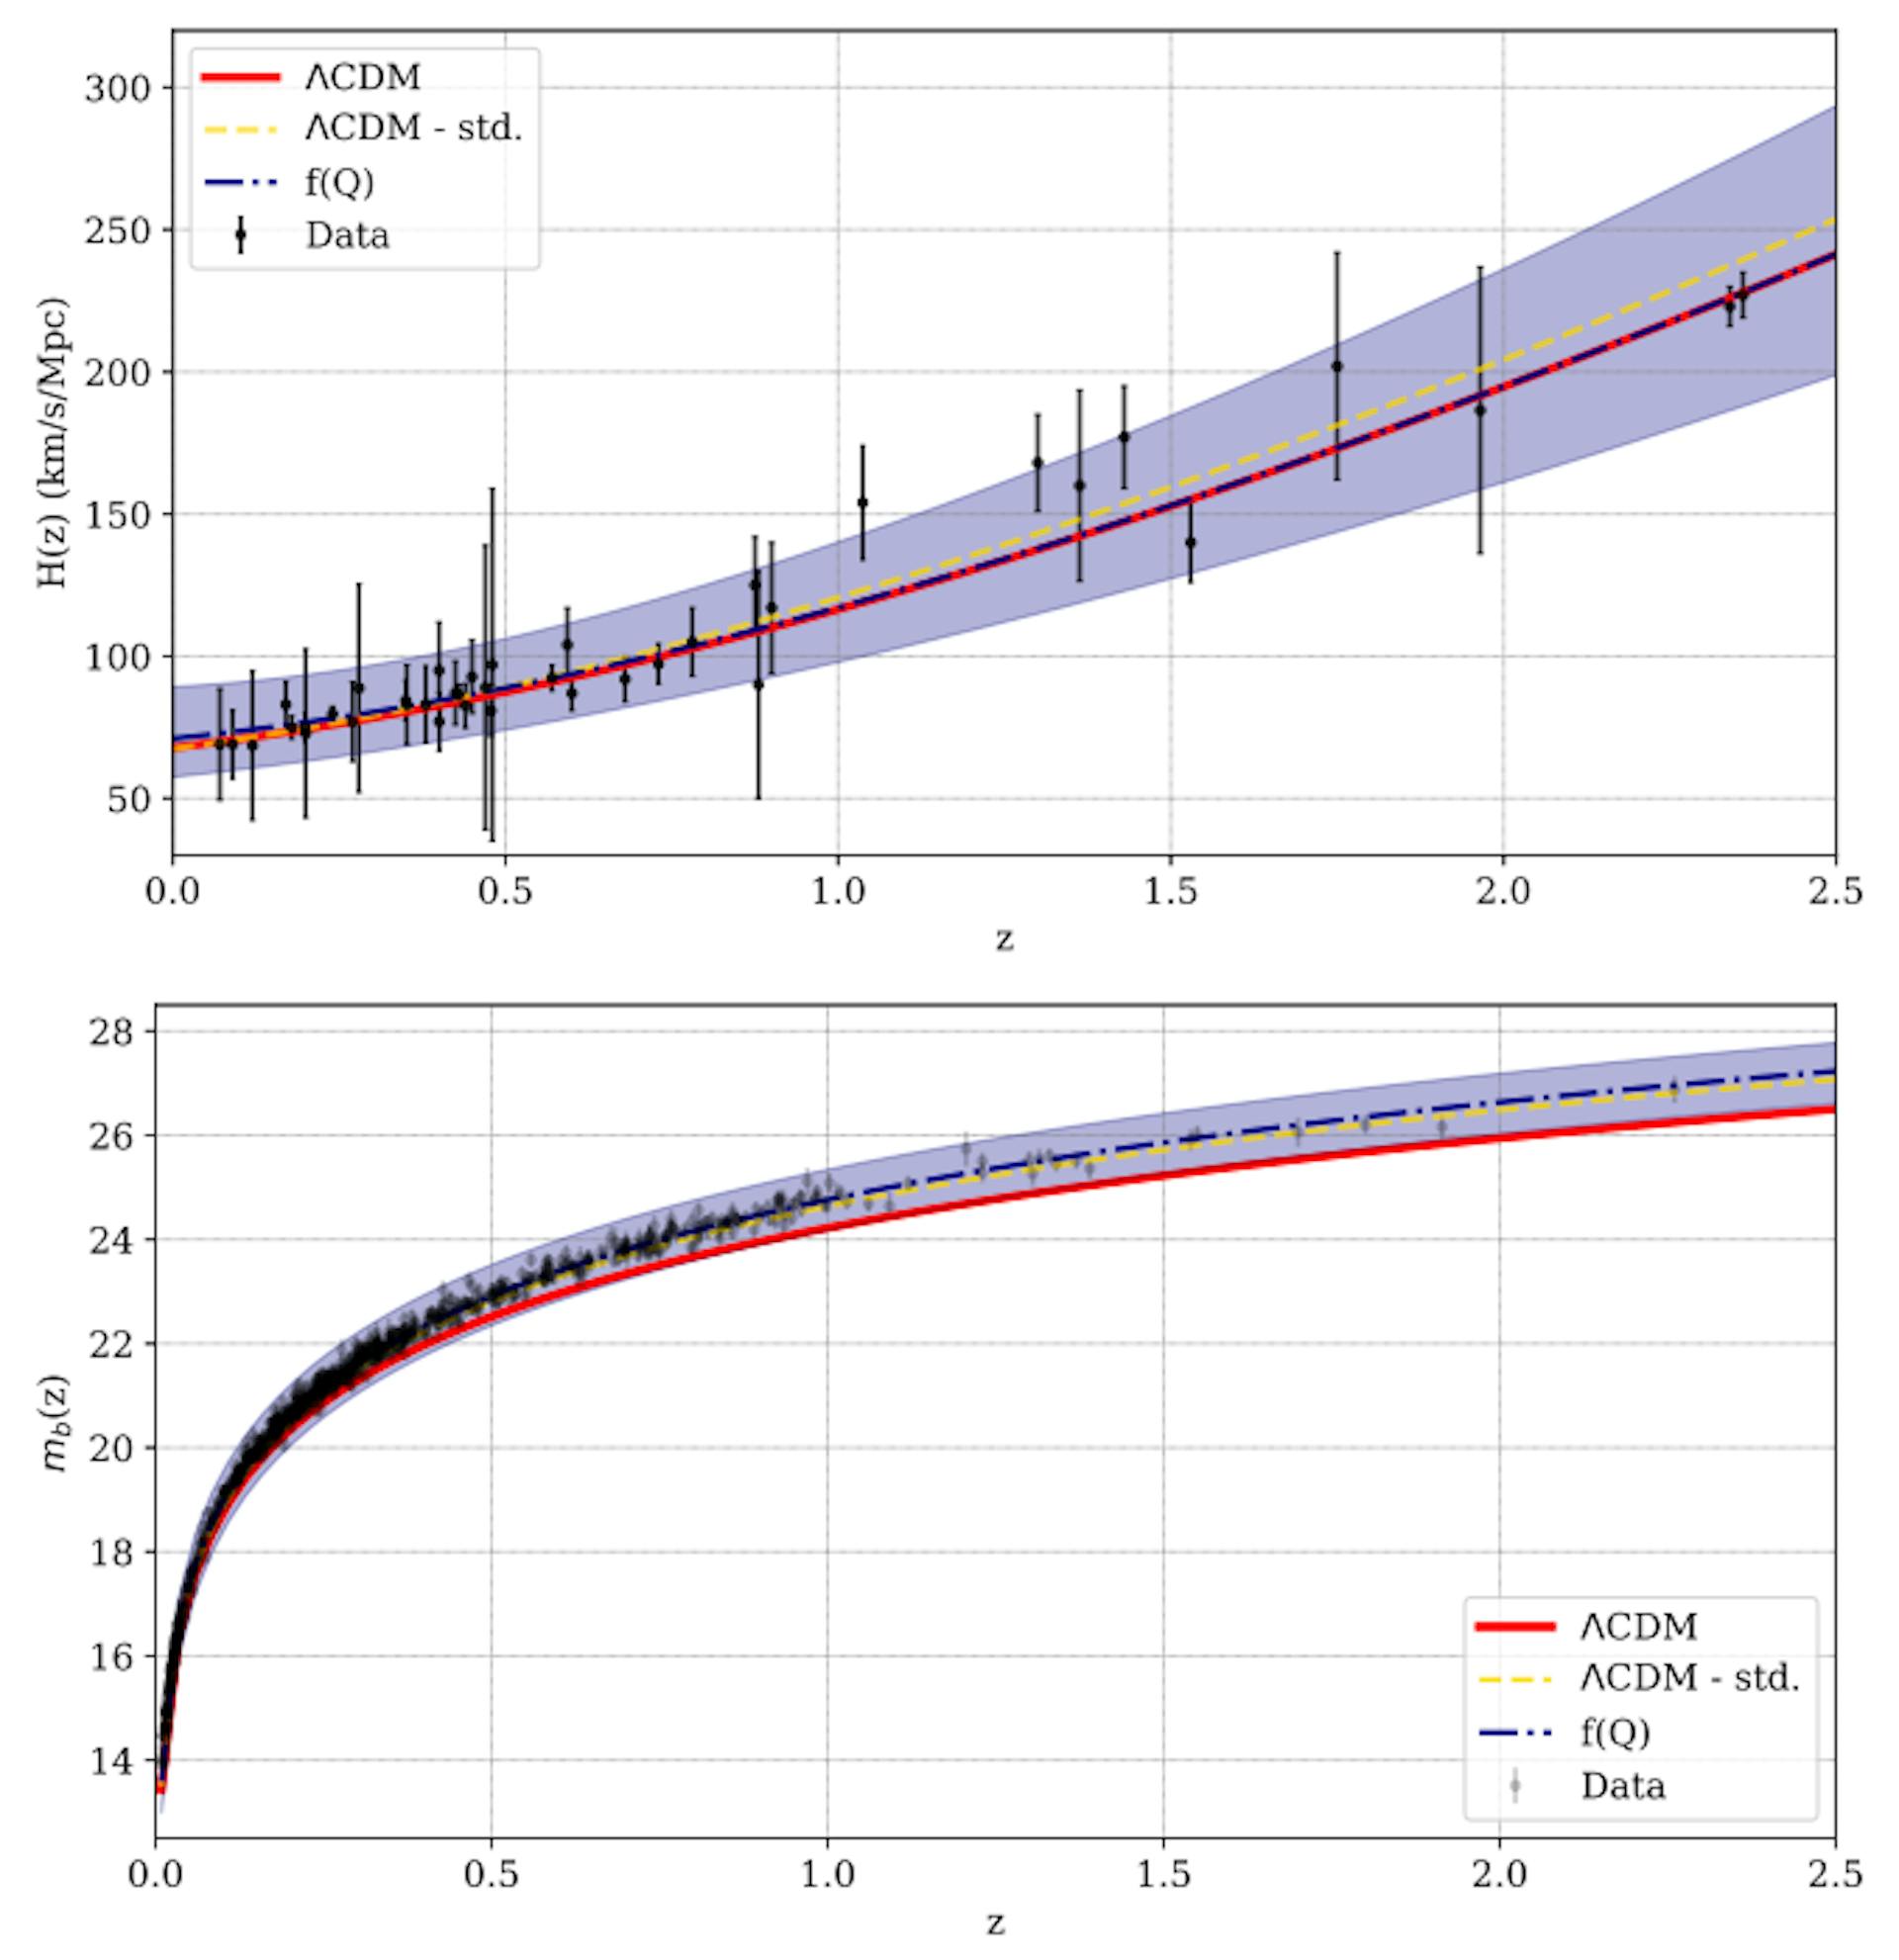 図 6: この研究で提示された f(Q) モデル (点線青) で予測されるハッブルパラメータ (上) と SN 等級 (下) の赤方偏移 z による変化を、観測データ (不確実性を示す縦線付きの黒点) と比較したもの。ΛCDM モデル (赤一色と金色の破線) による予測変化も比較のために示しており、詳細は本文で説明されている。